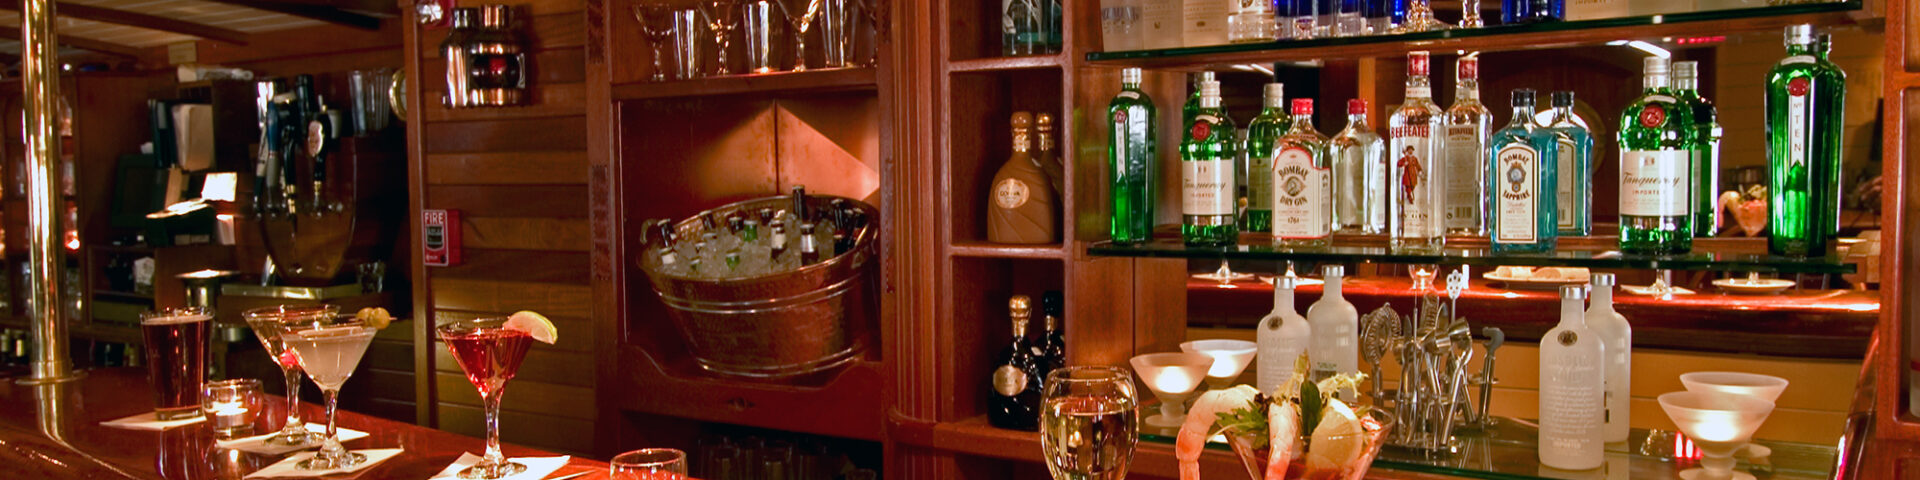 Ship's Cellar Pub Martini Bar